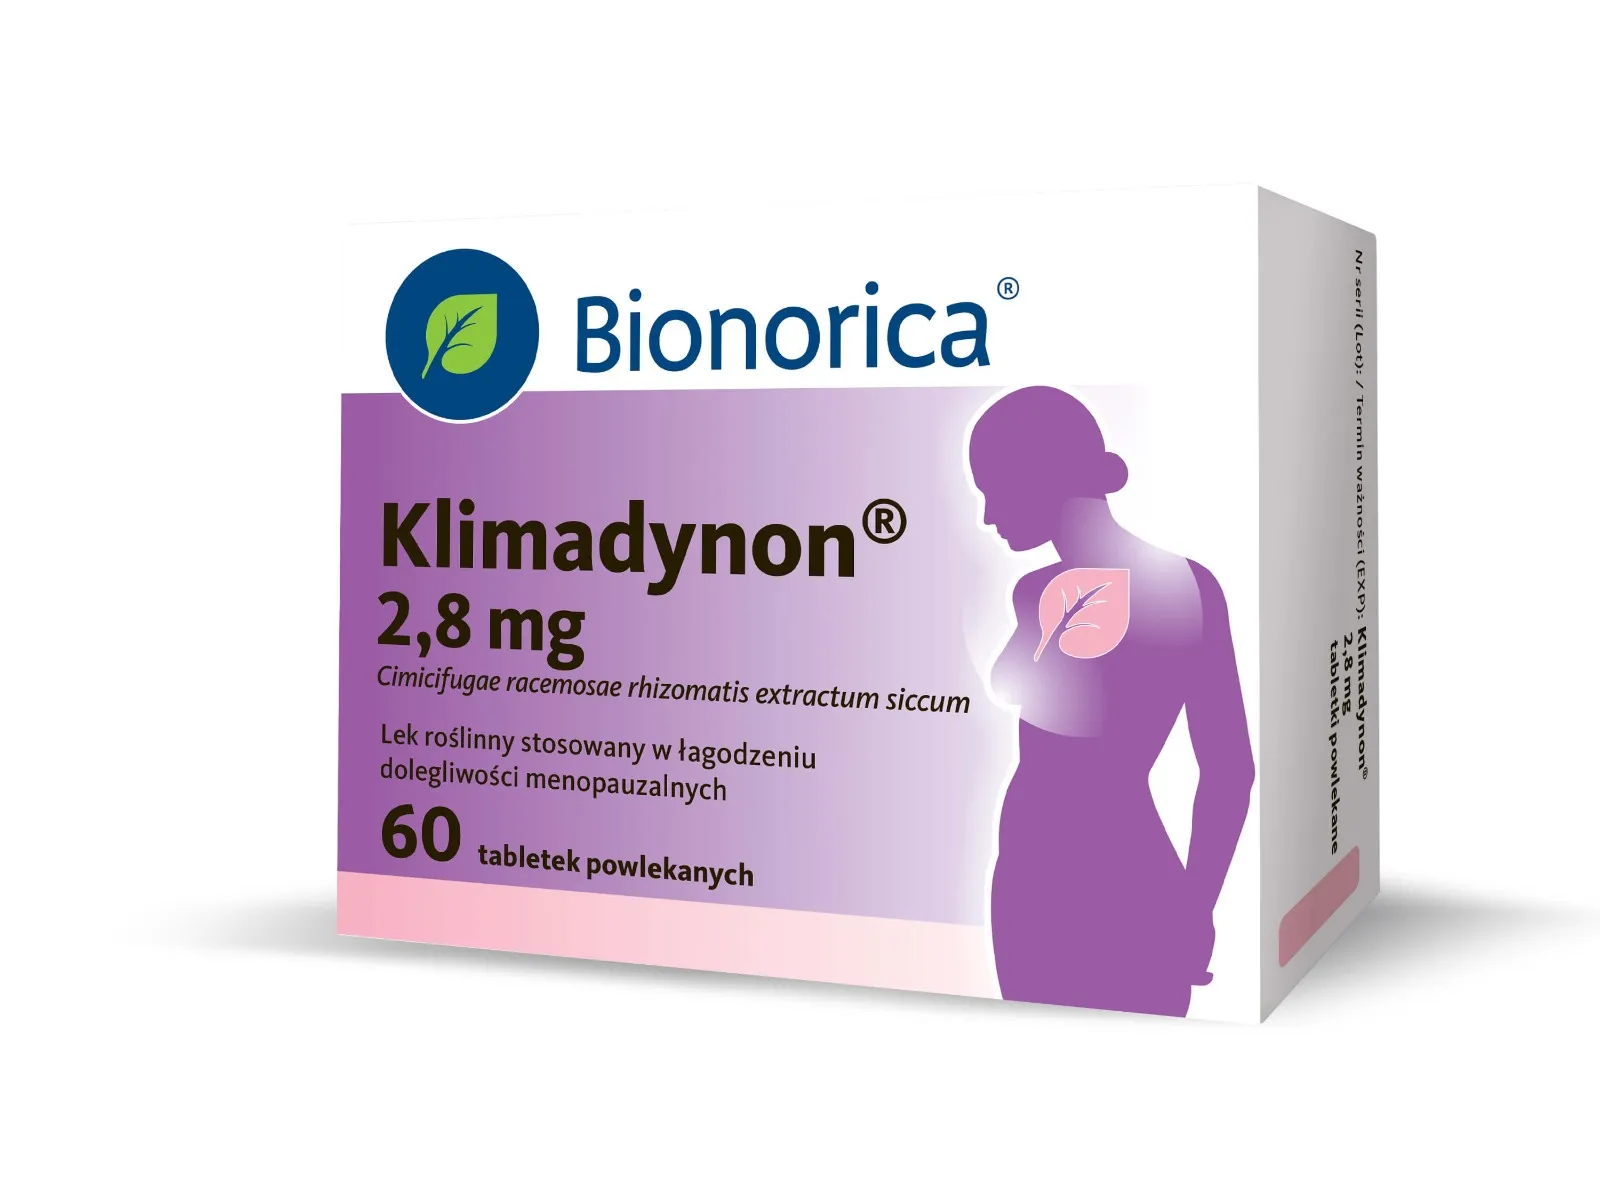 Bionorica Klimadynon, 60 tabletek powlekanych